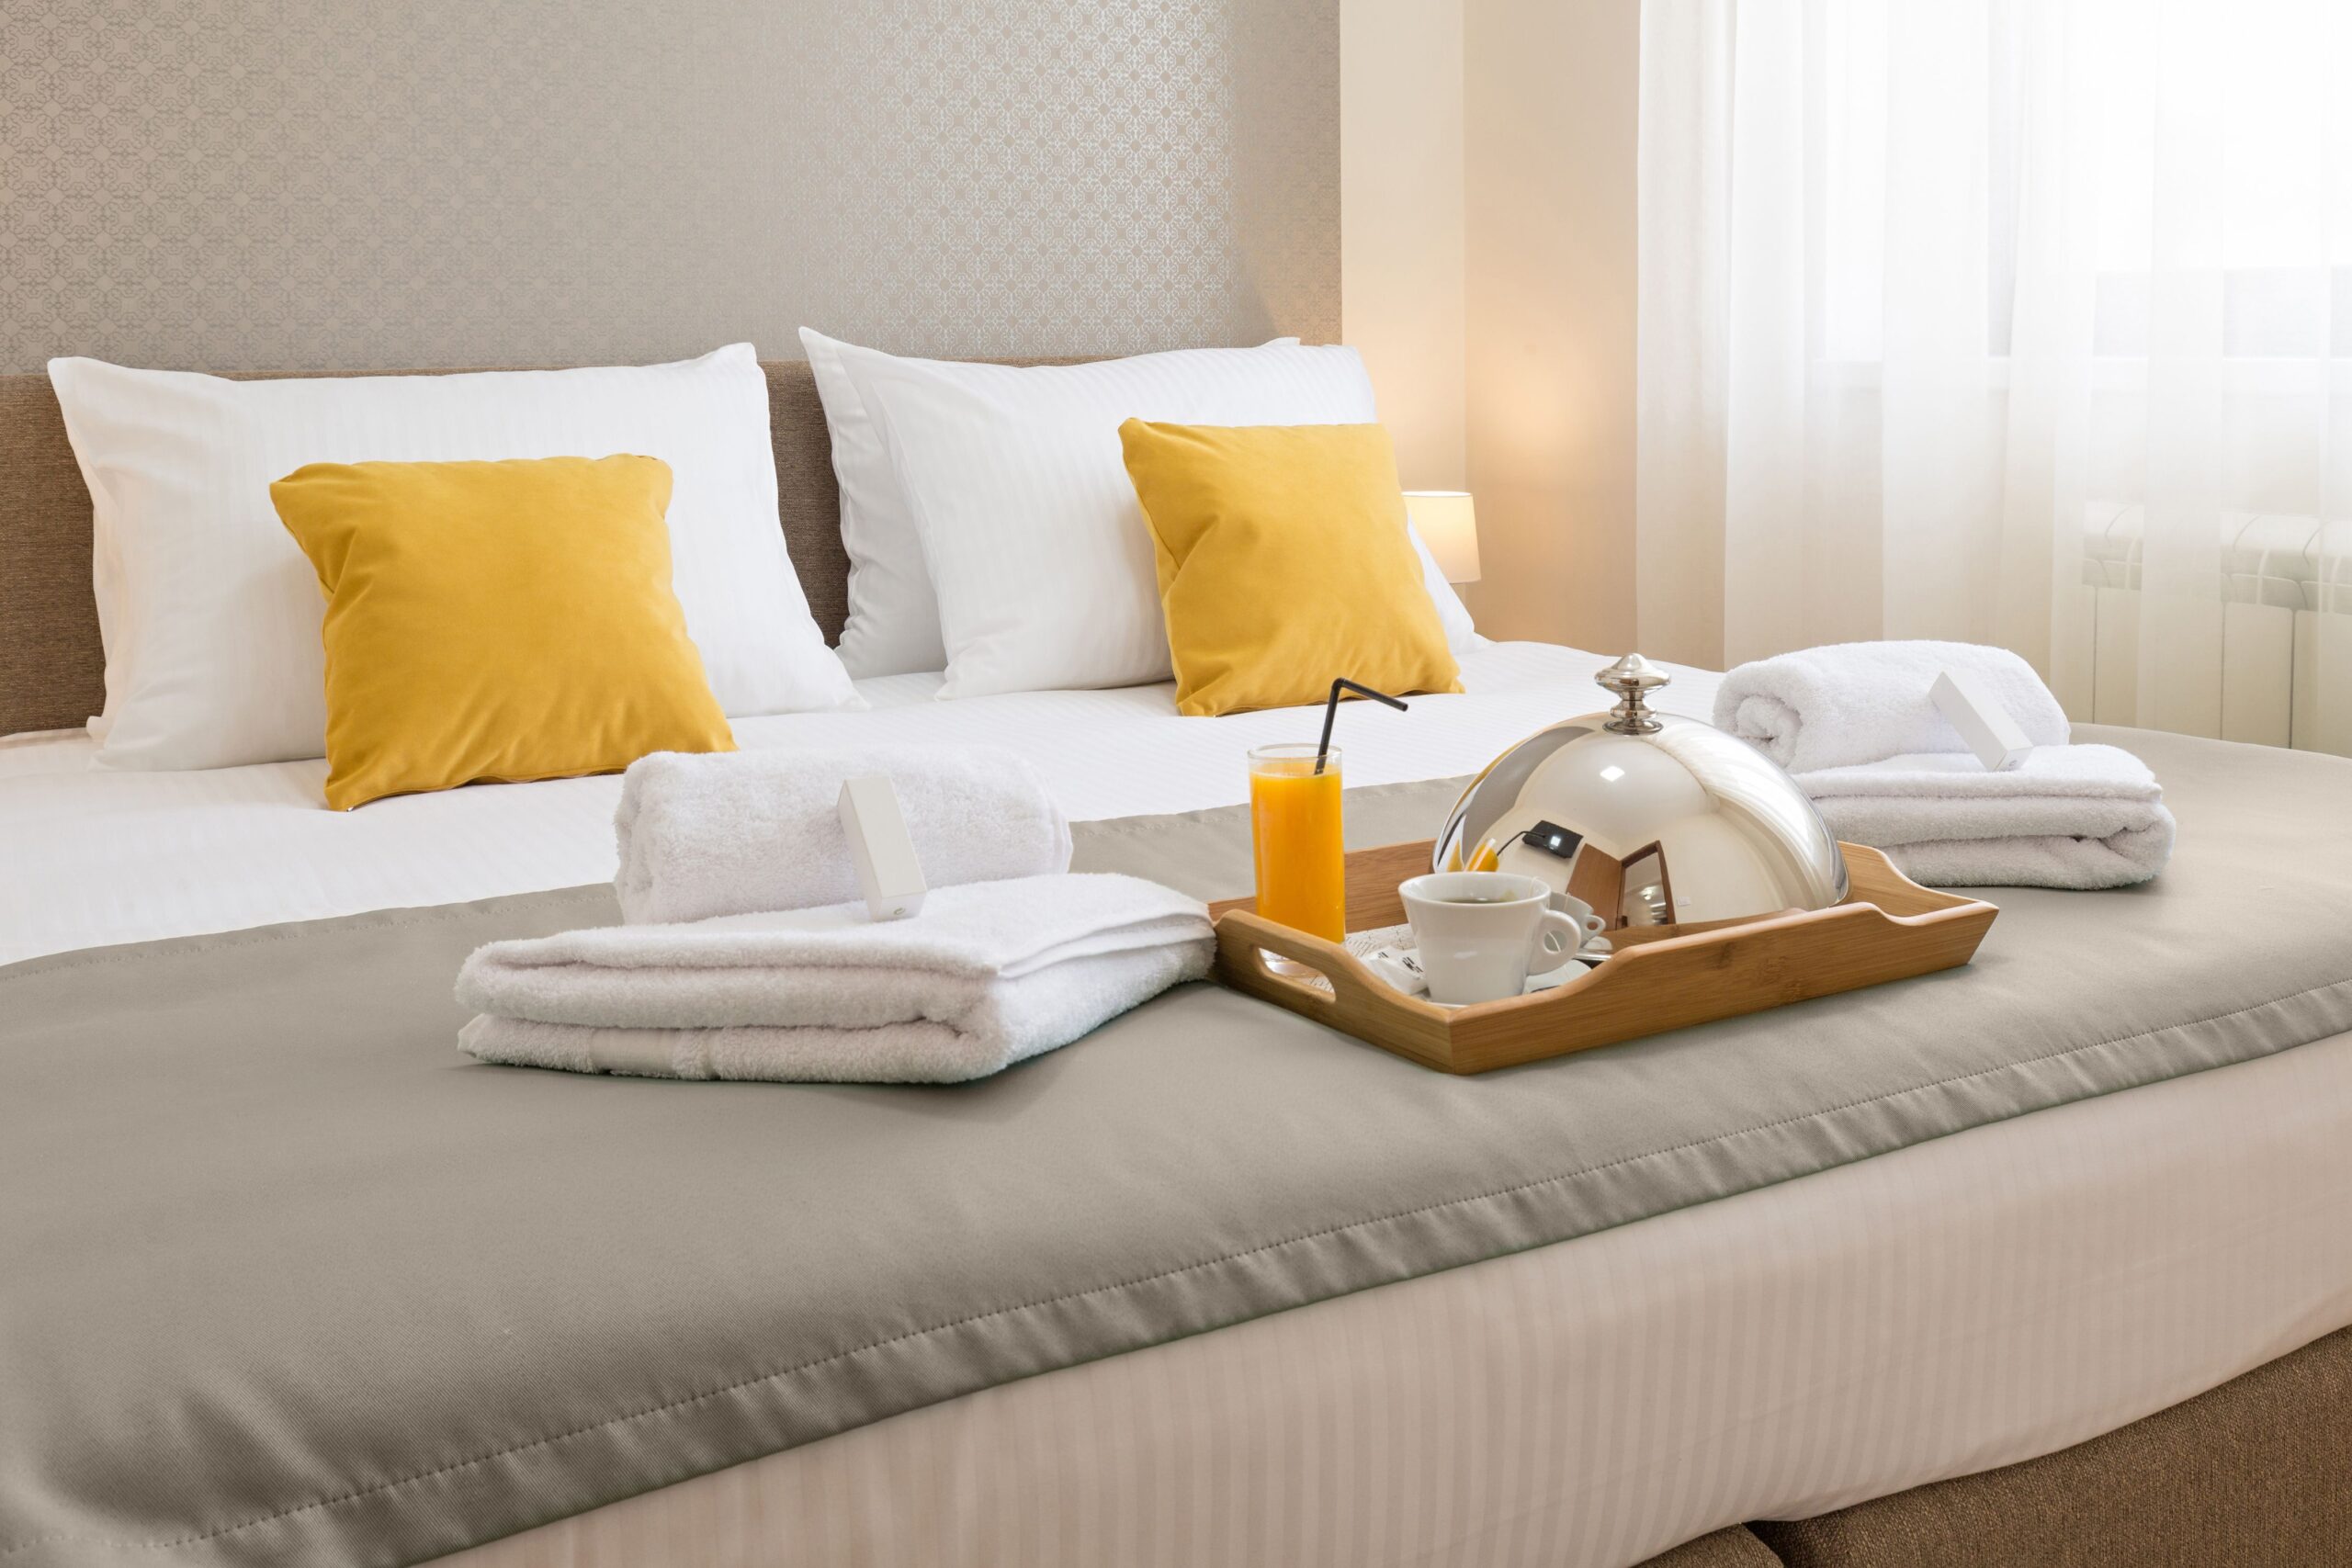 Hotel bed frame design